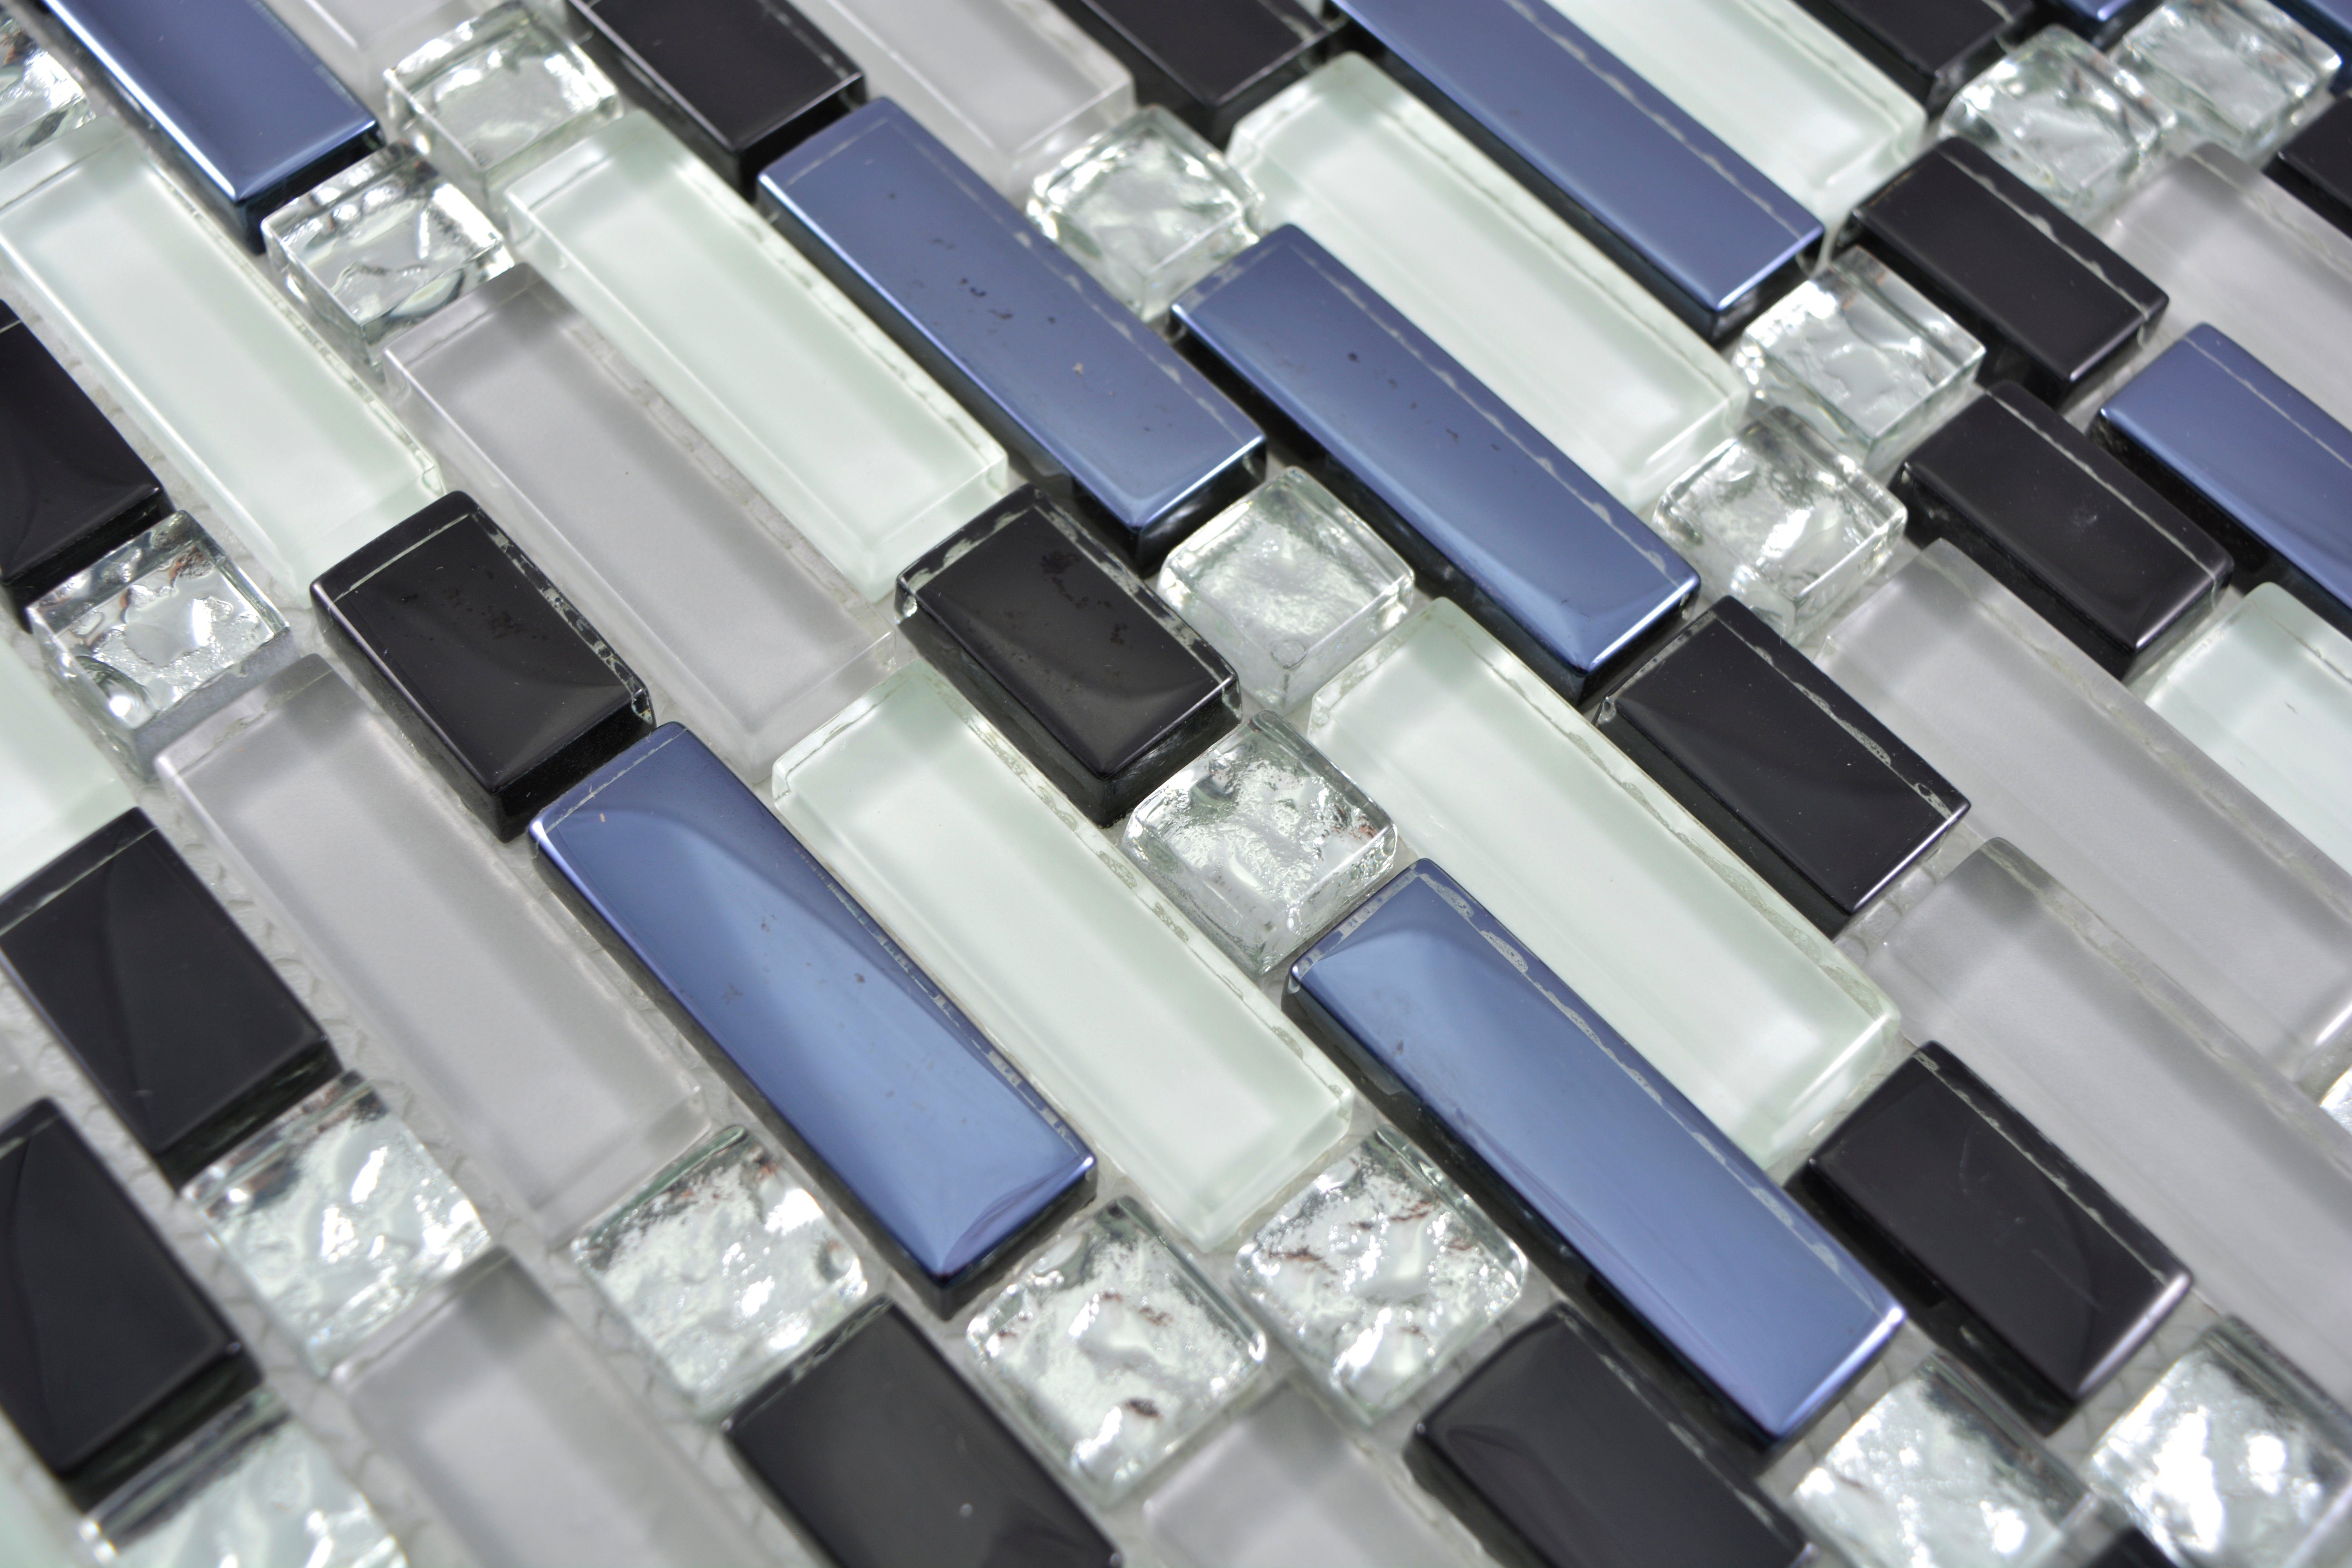 Mosani Mosaikfliesen Mosaik Crystal glänzend 10 grau schwarz Glasmosaik weiß / Matten